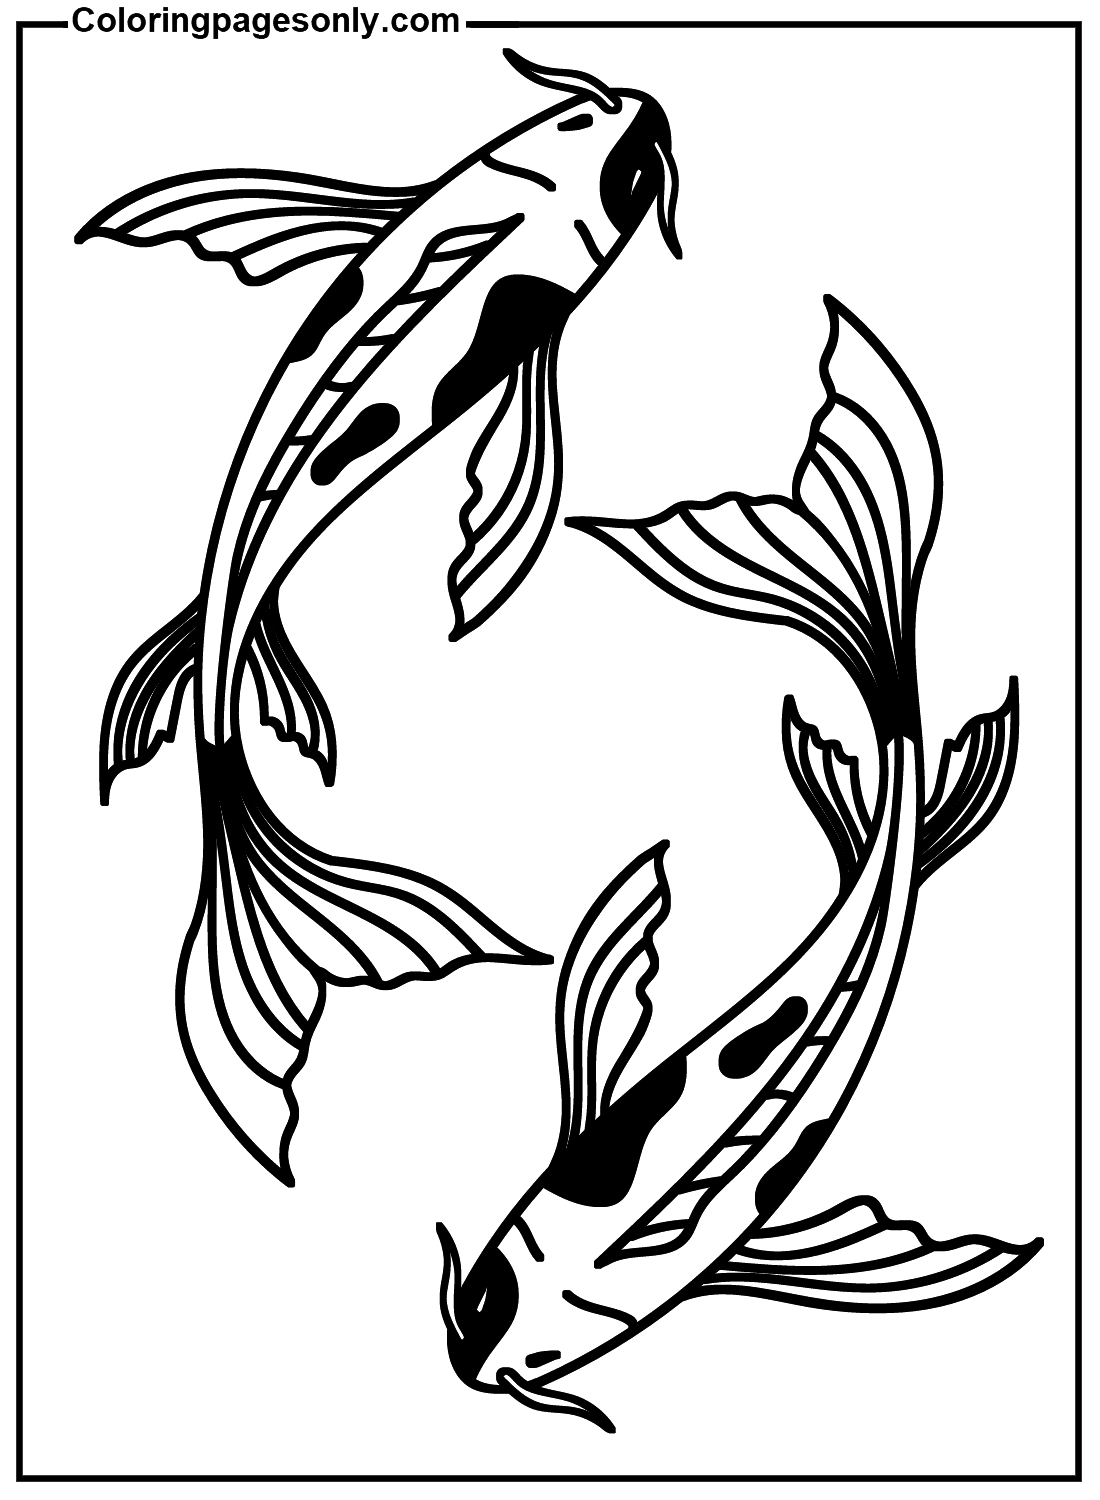 أسماك كوي مجانية قابلة للطباعة من أسماك كوي